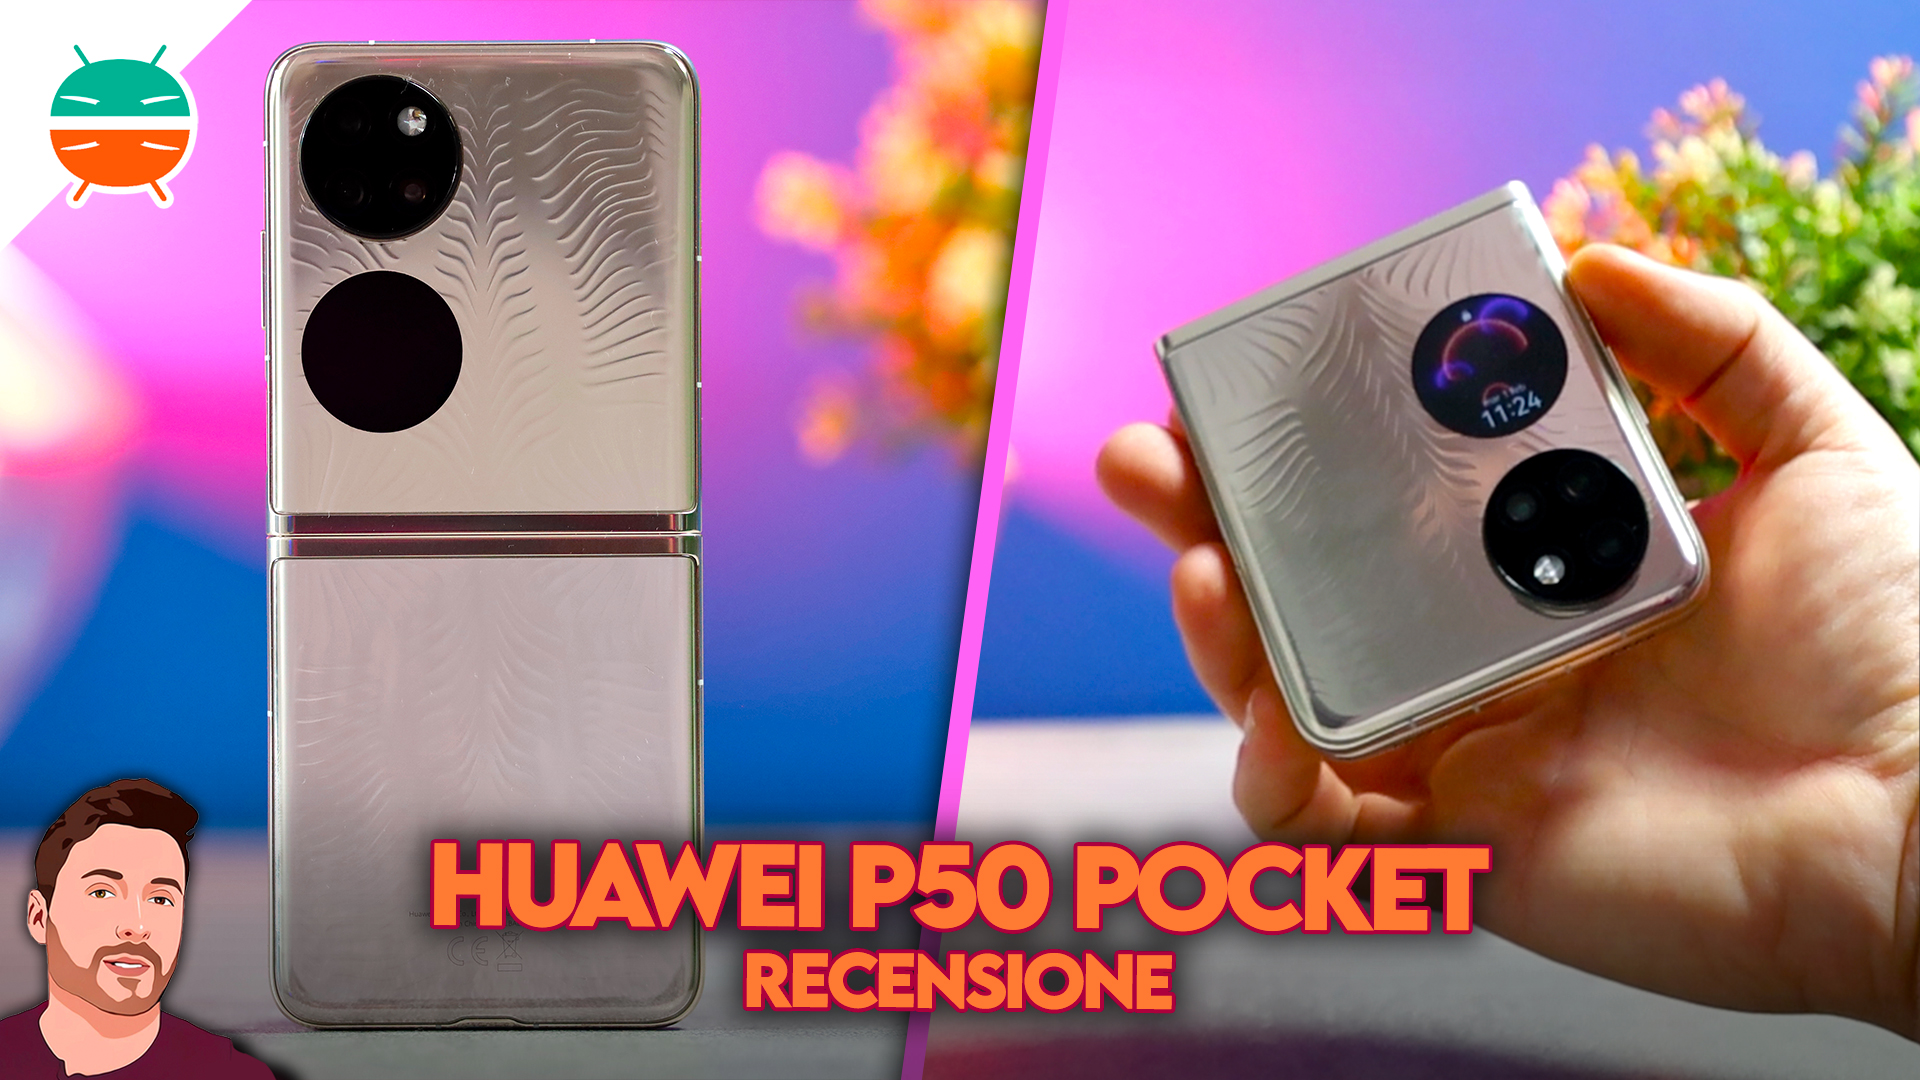 P50 pocket huawei Huawei P50